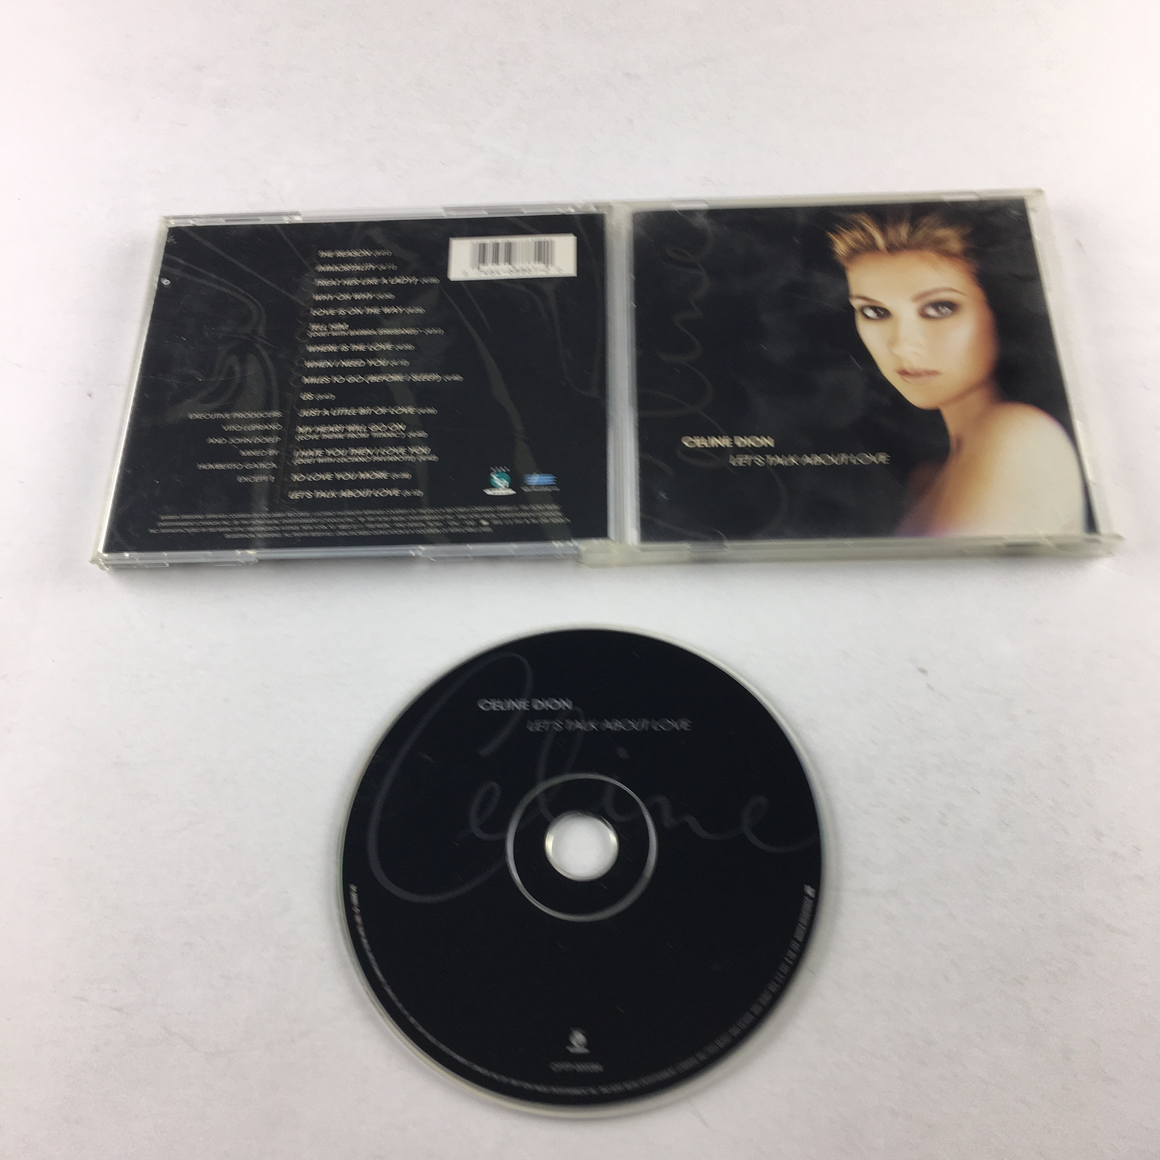 Celine Dion Let's Talk About Love Used CD VG+\VG+